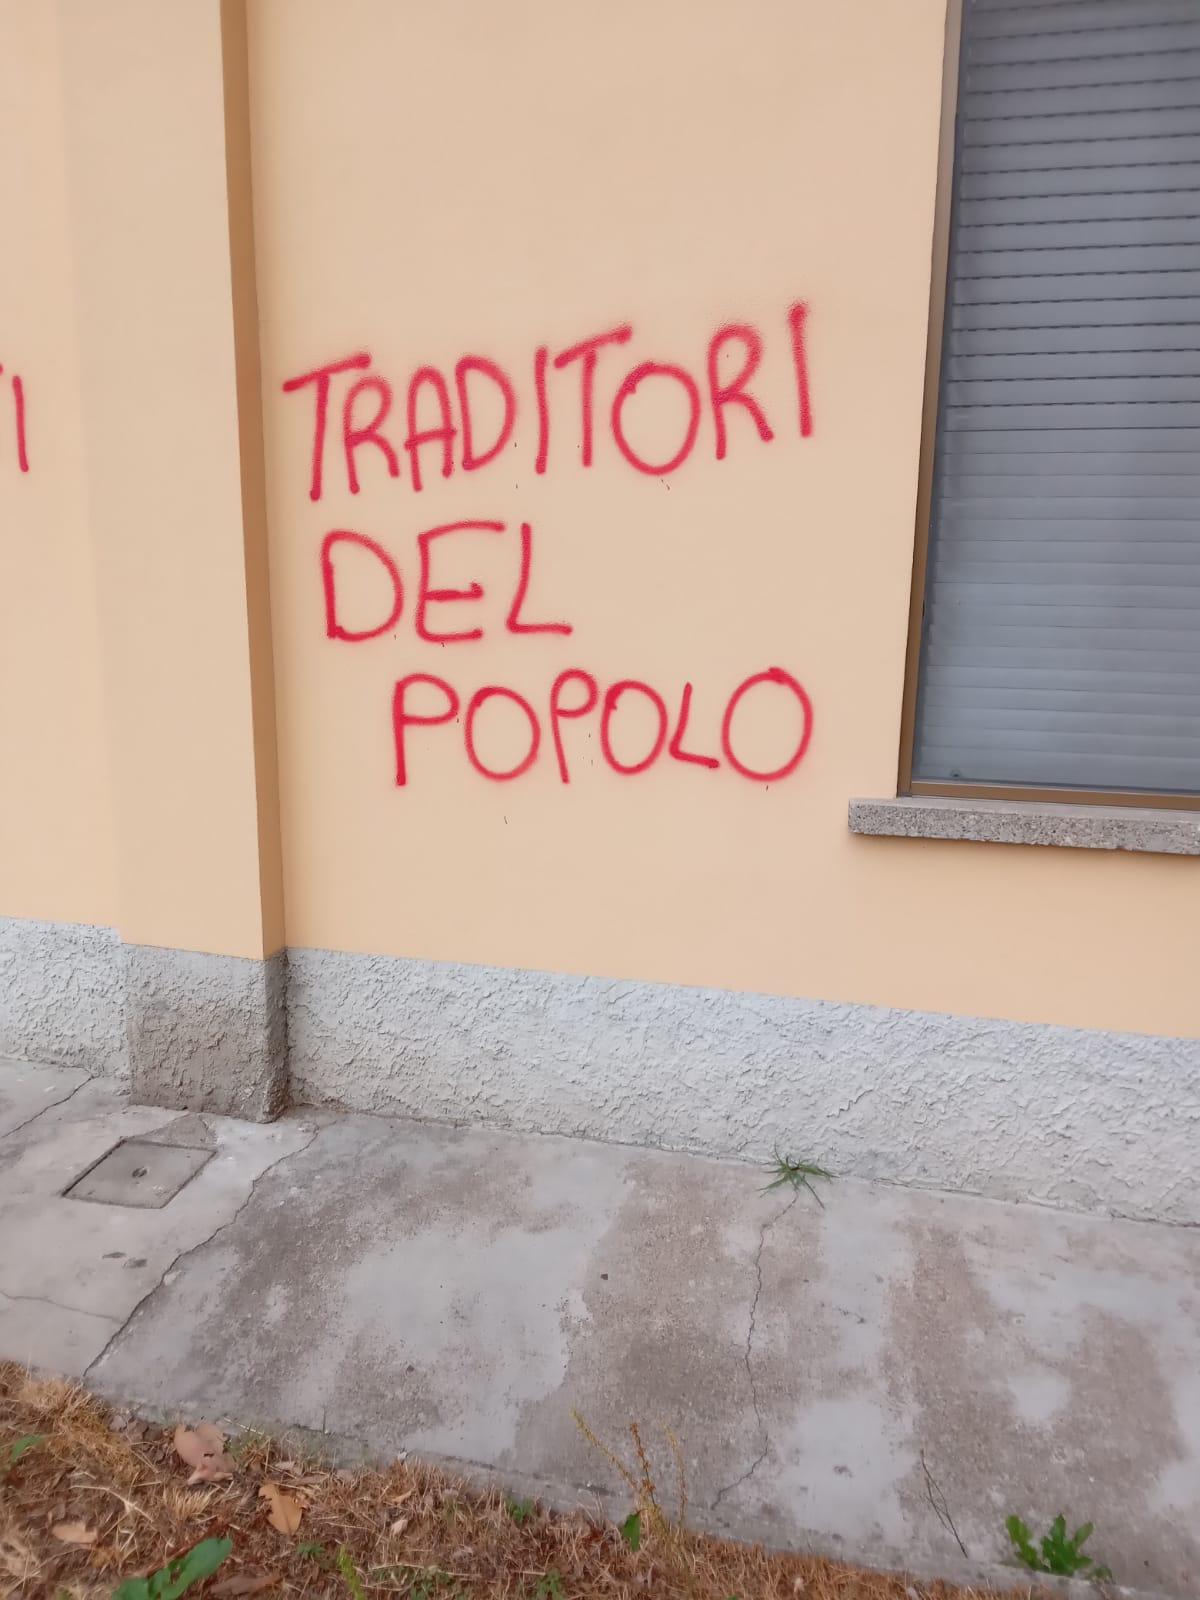 Cgil Lombardia e Varese: “Il raid contro la sede di Saronno è una stupida provocazione”